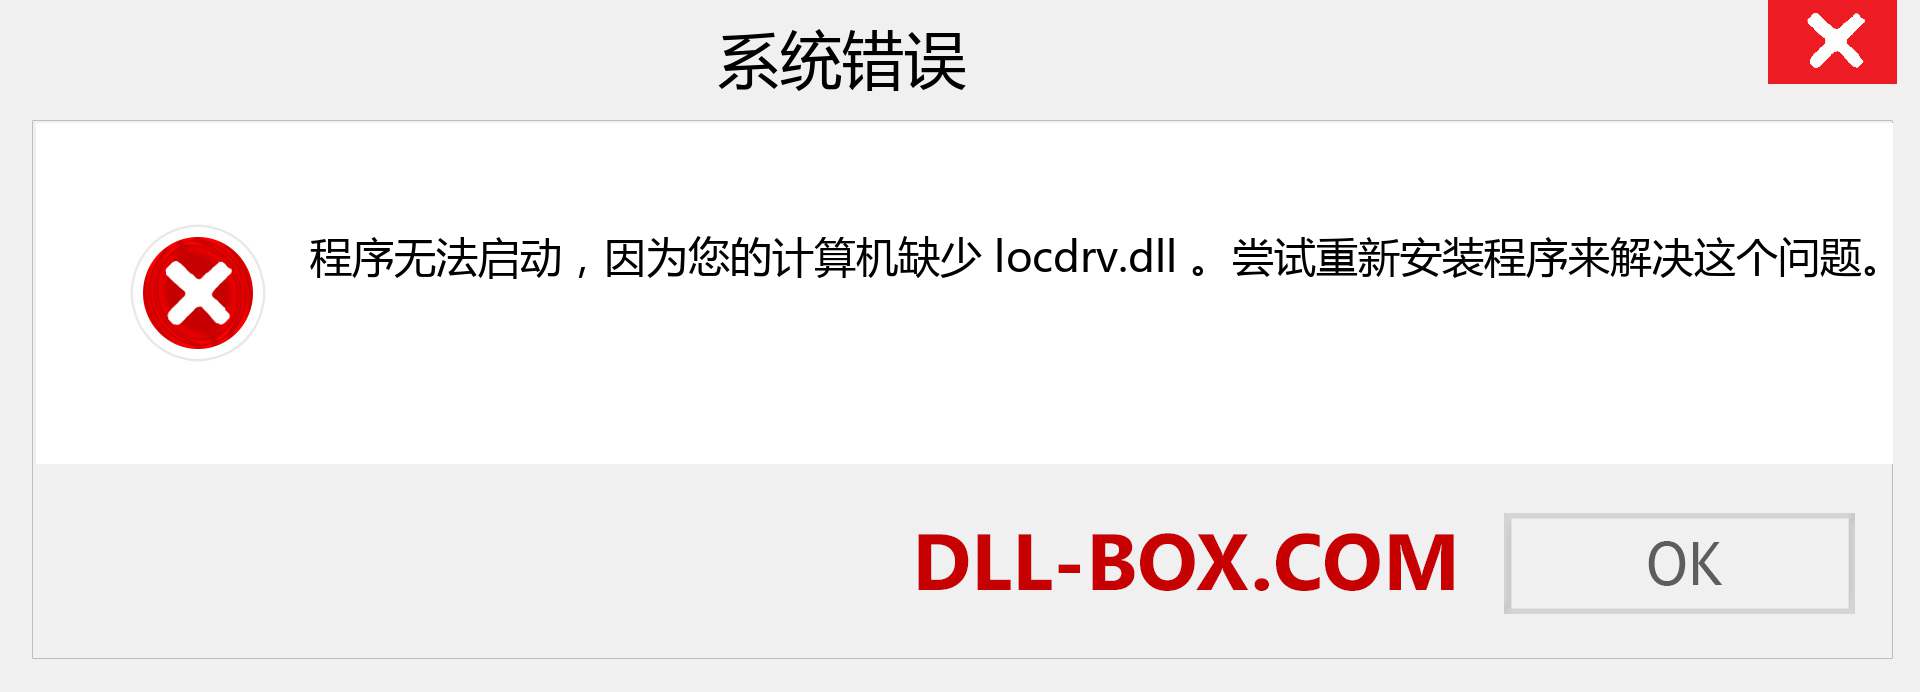 locdrv.dll 文件丢失？。 适用于 Windows 7、8、10 的下载 - 修复 Windows、照片、图像上的 locdrv dll 丢失错误